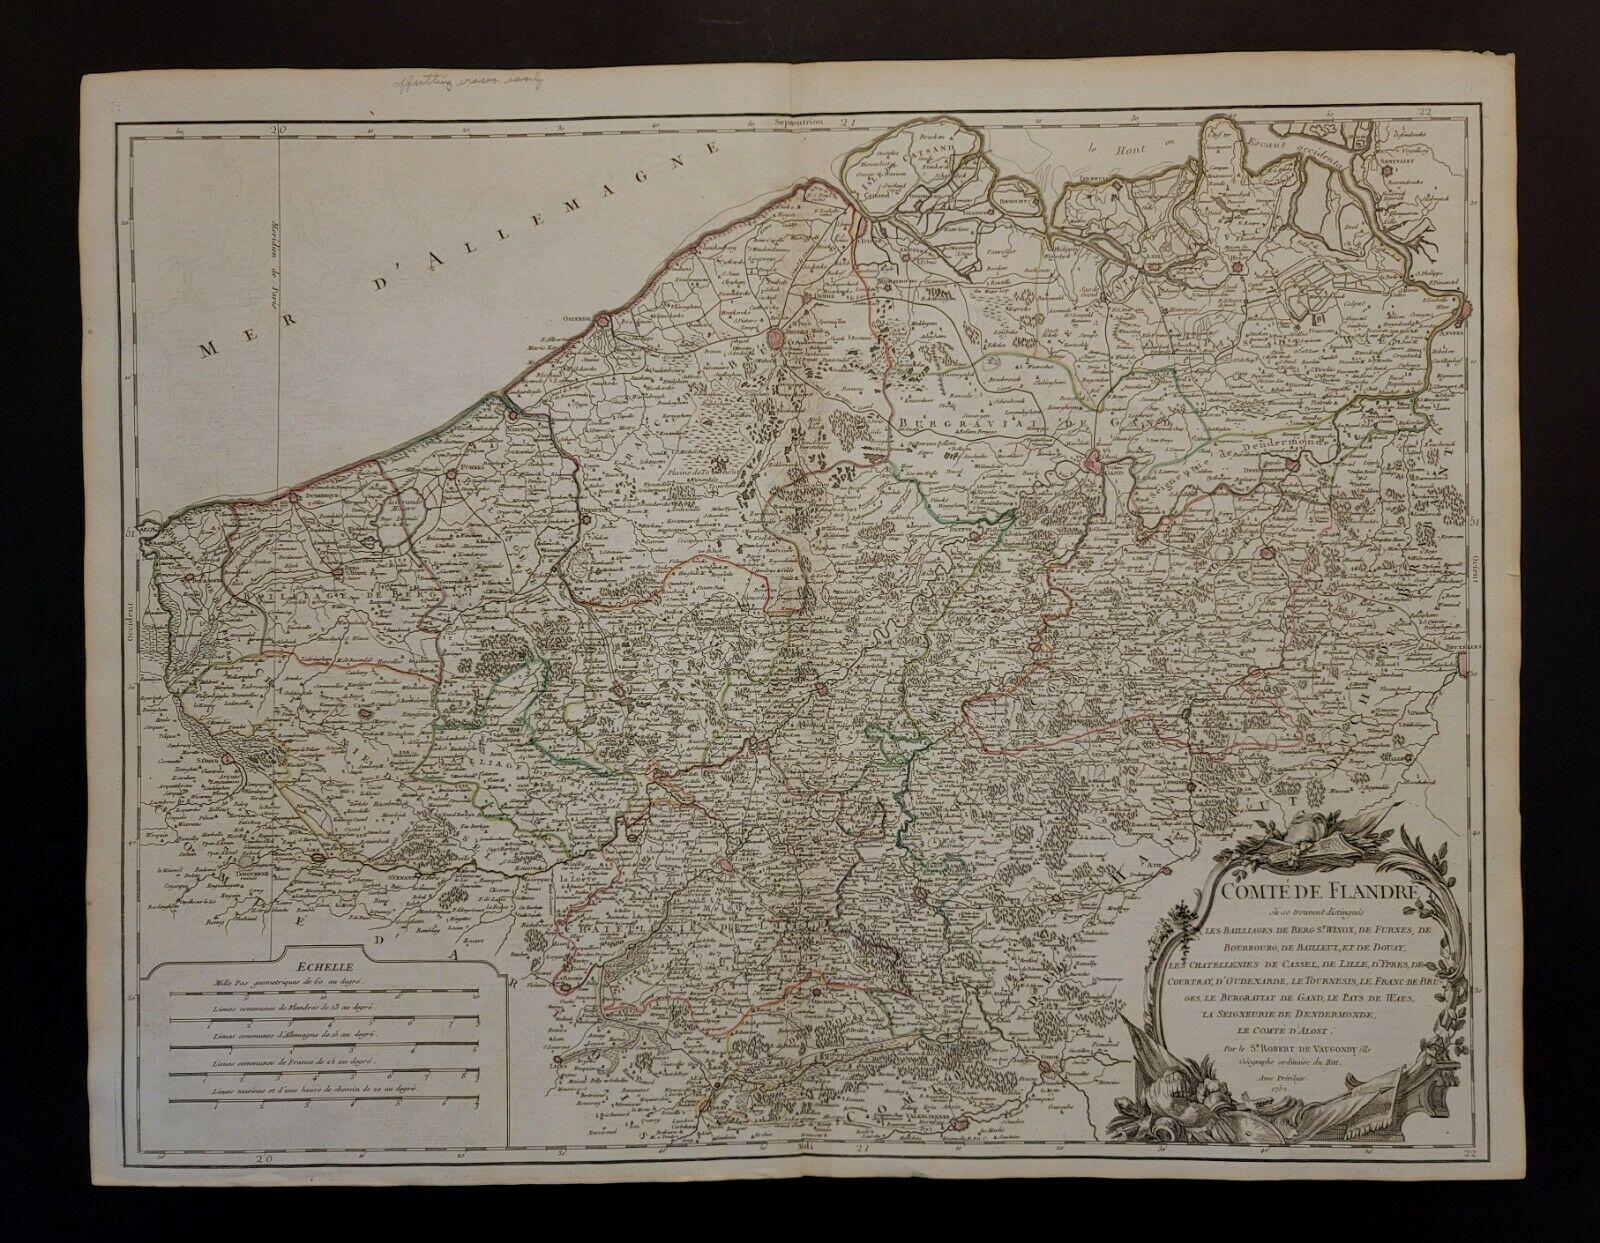 Grande carte des Flandres de Vaugoundy :
Belgique, France et Pays-Bas 
Coloré -1752 
Ric.a002

Description : Il s'agit d'une carte des Flandres de Didier Robert de Vaugondy de 1752. La carte représente la moitié nord de la Belgique, l'extrême